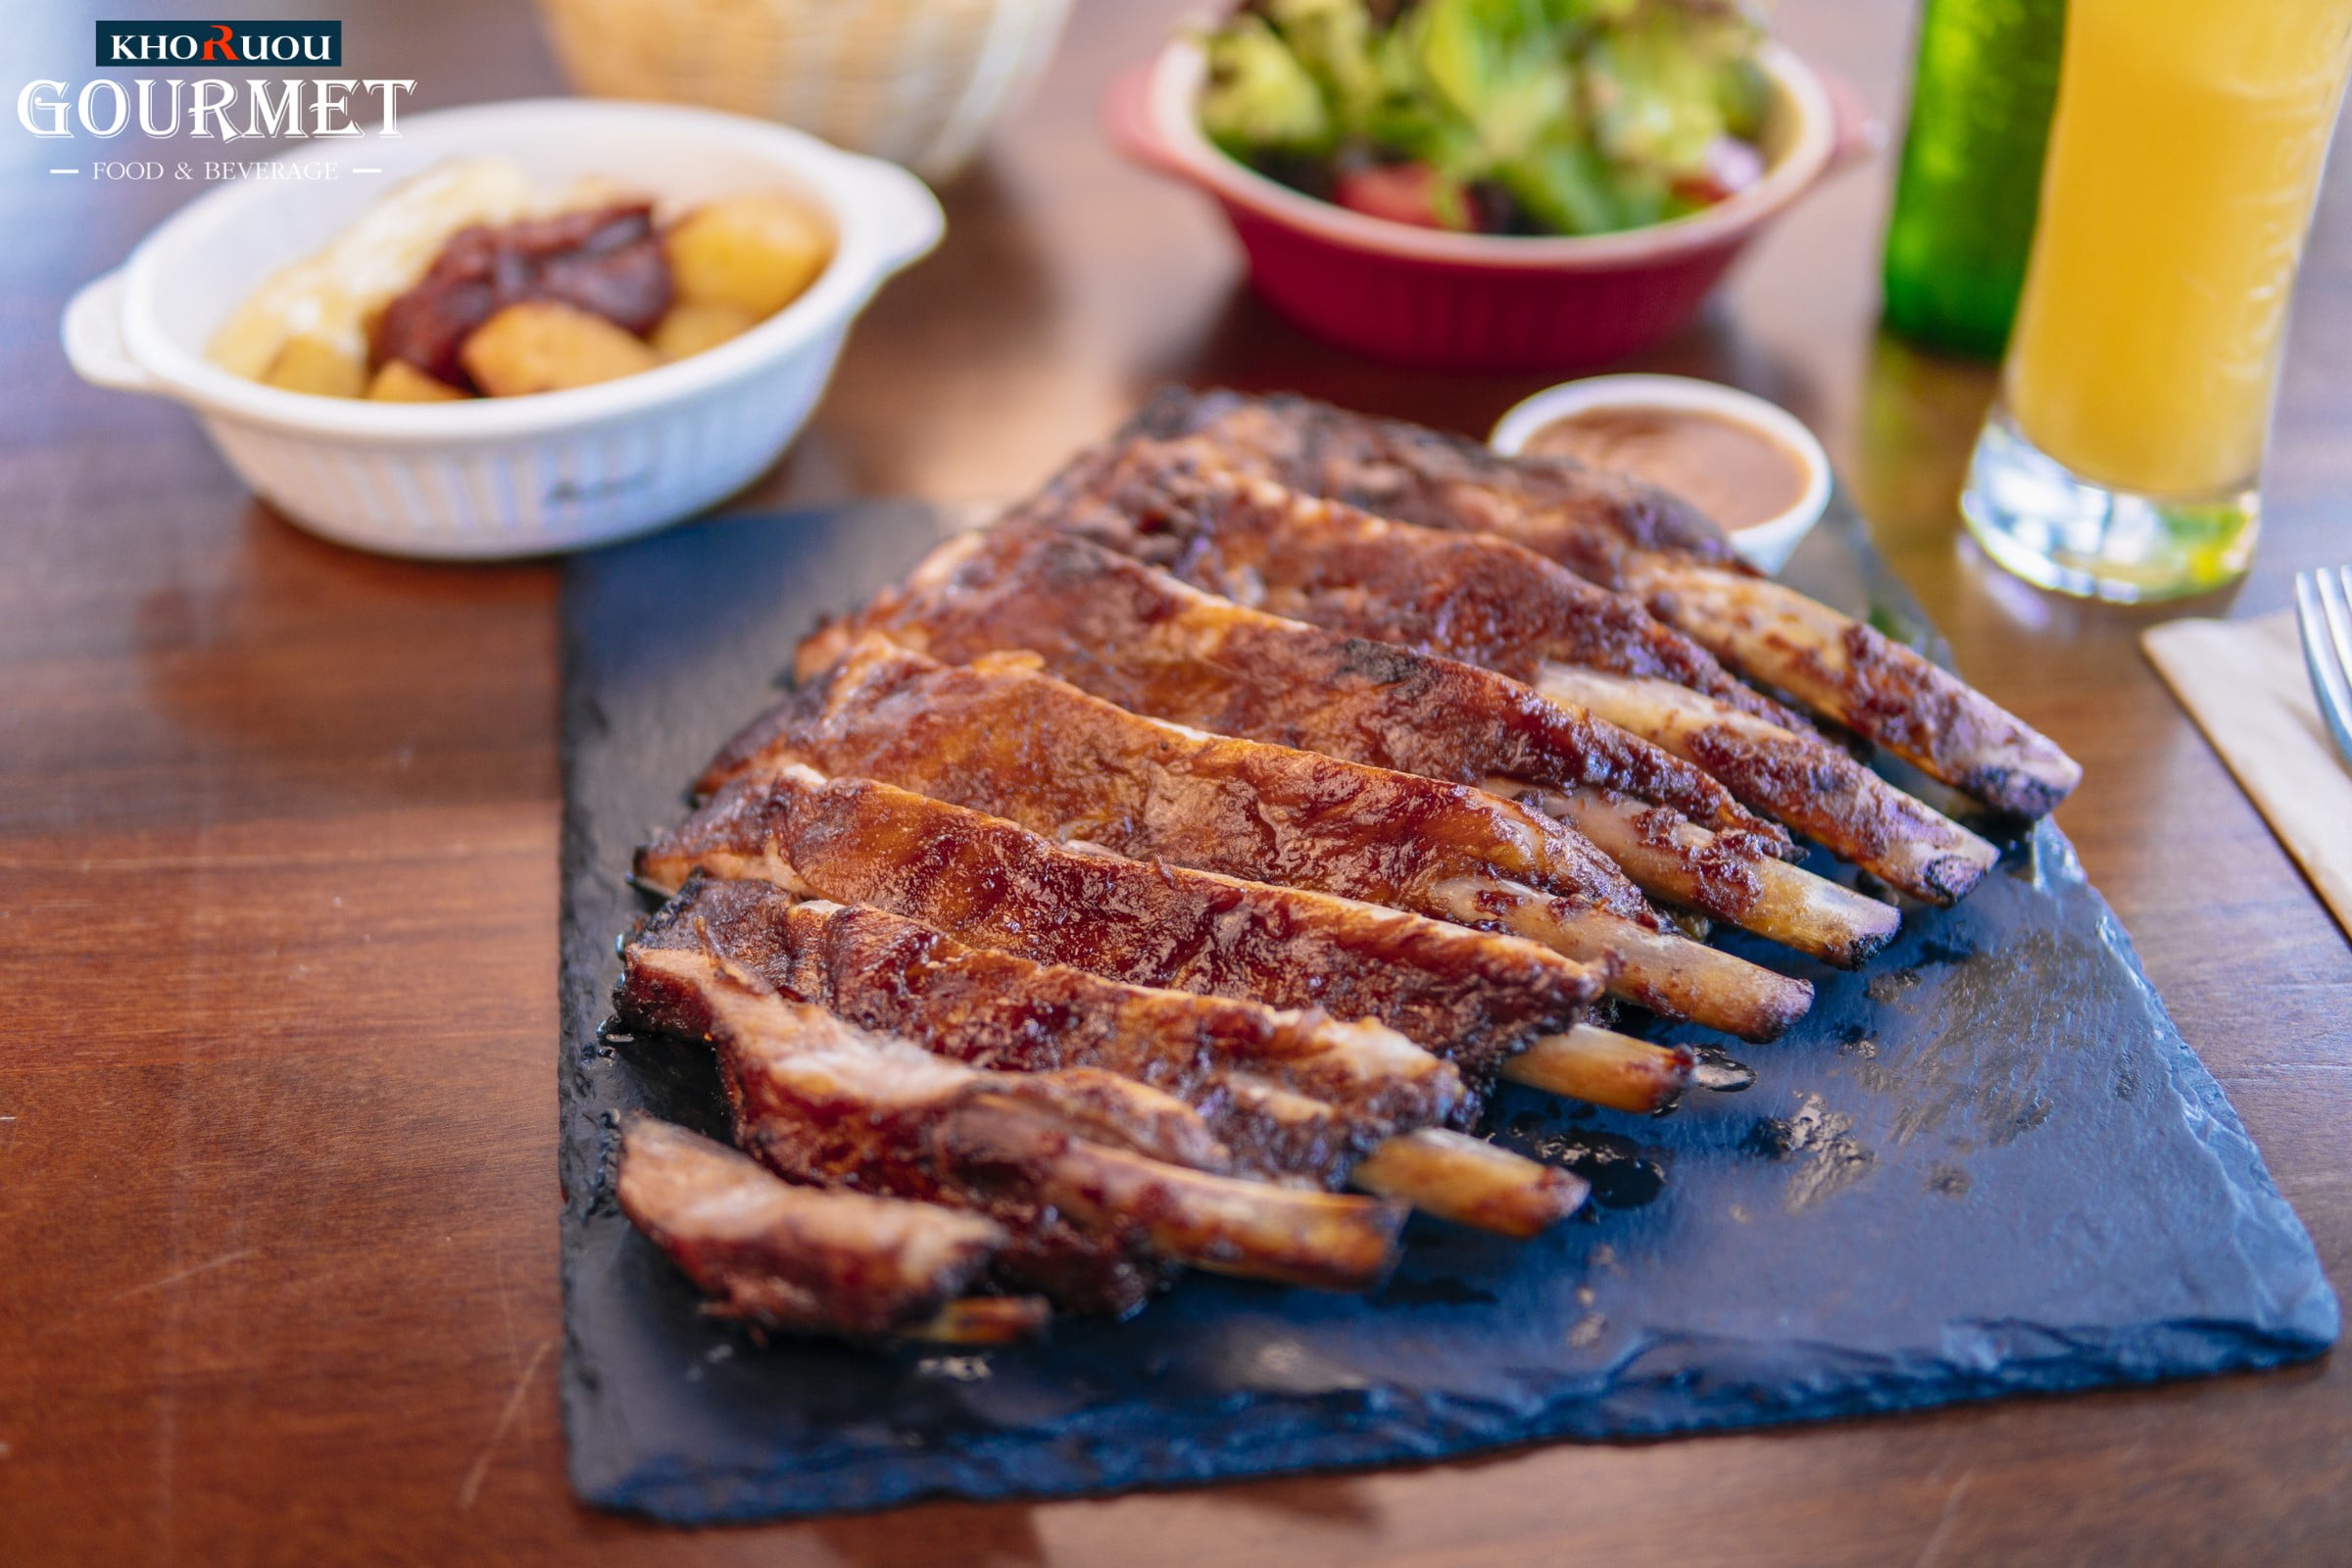 Thịt heo Iberico đút lò là một trong các món làm từ thịt có hương vị siêu hấp dẫn và có thể lựa chọn các phần thịt sườn heo cao cấp để chế biến món ăn